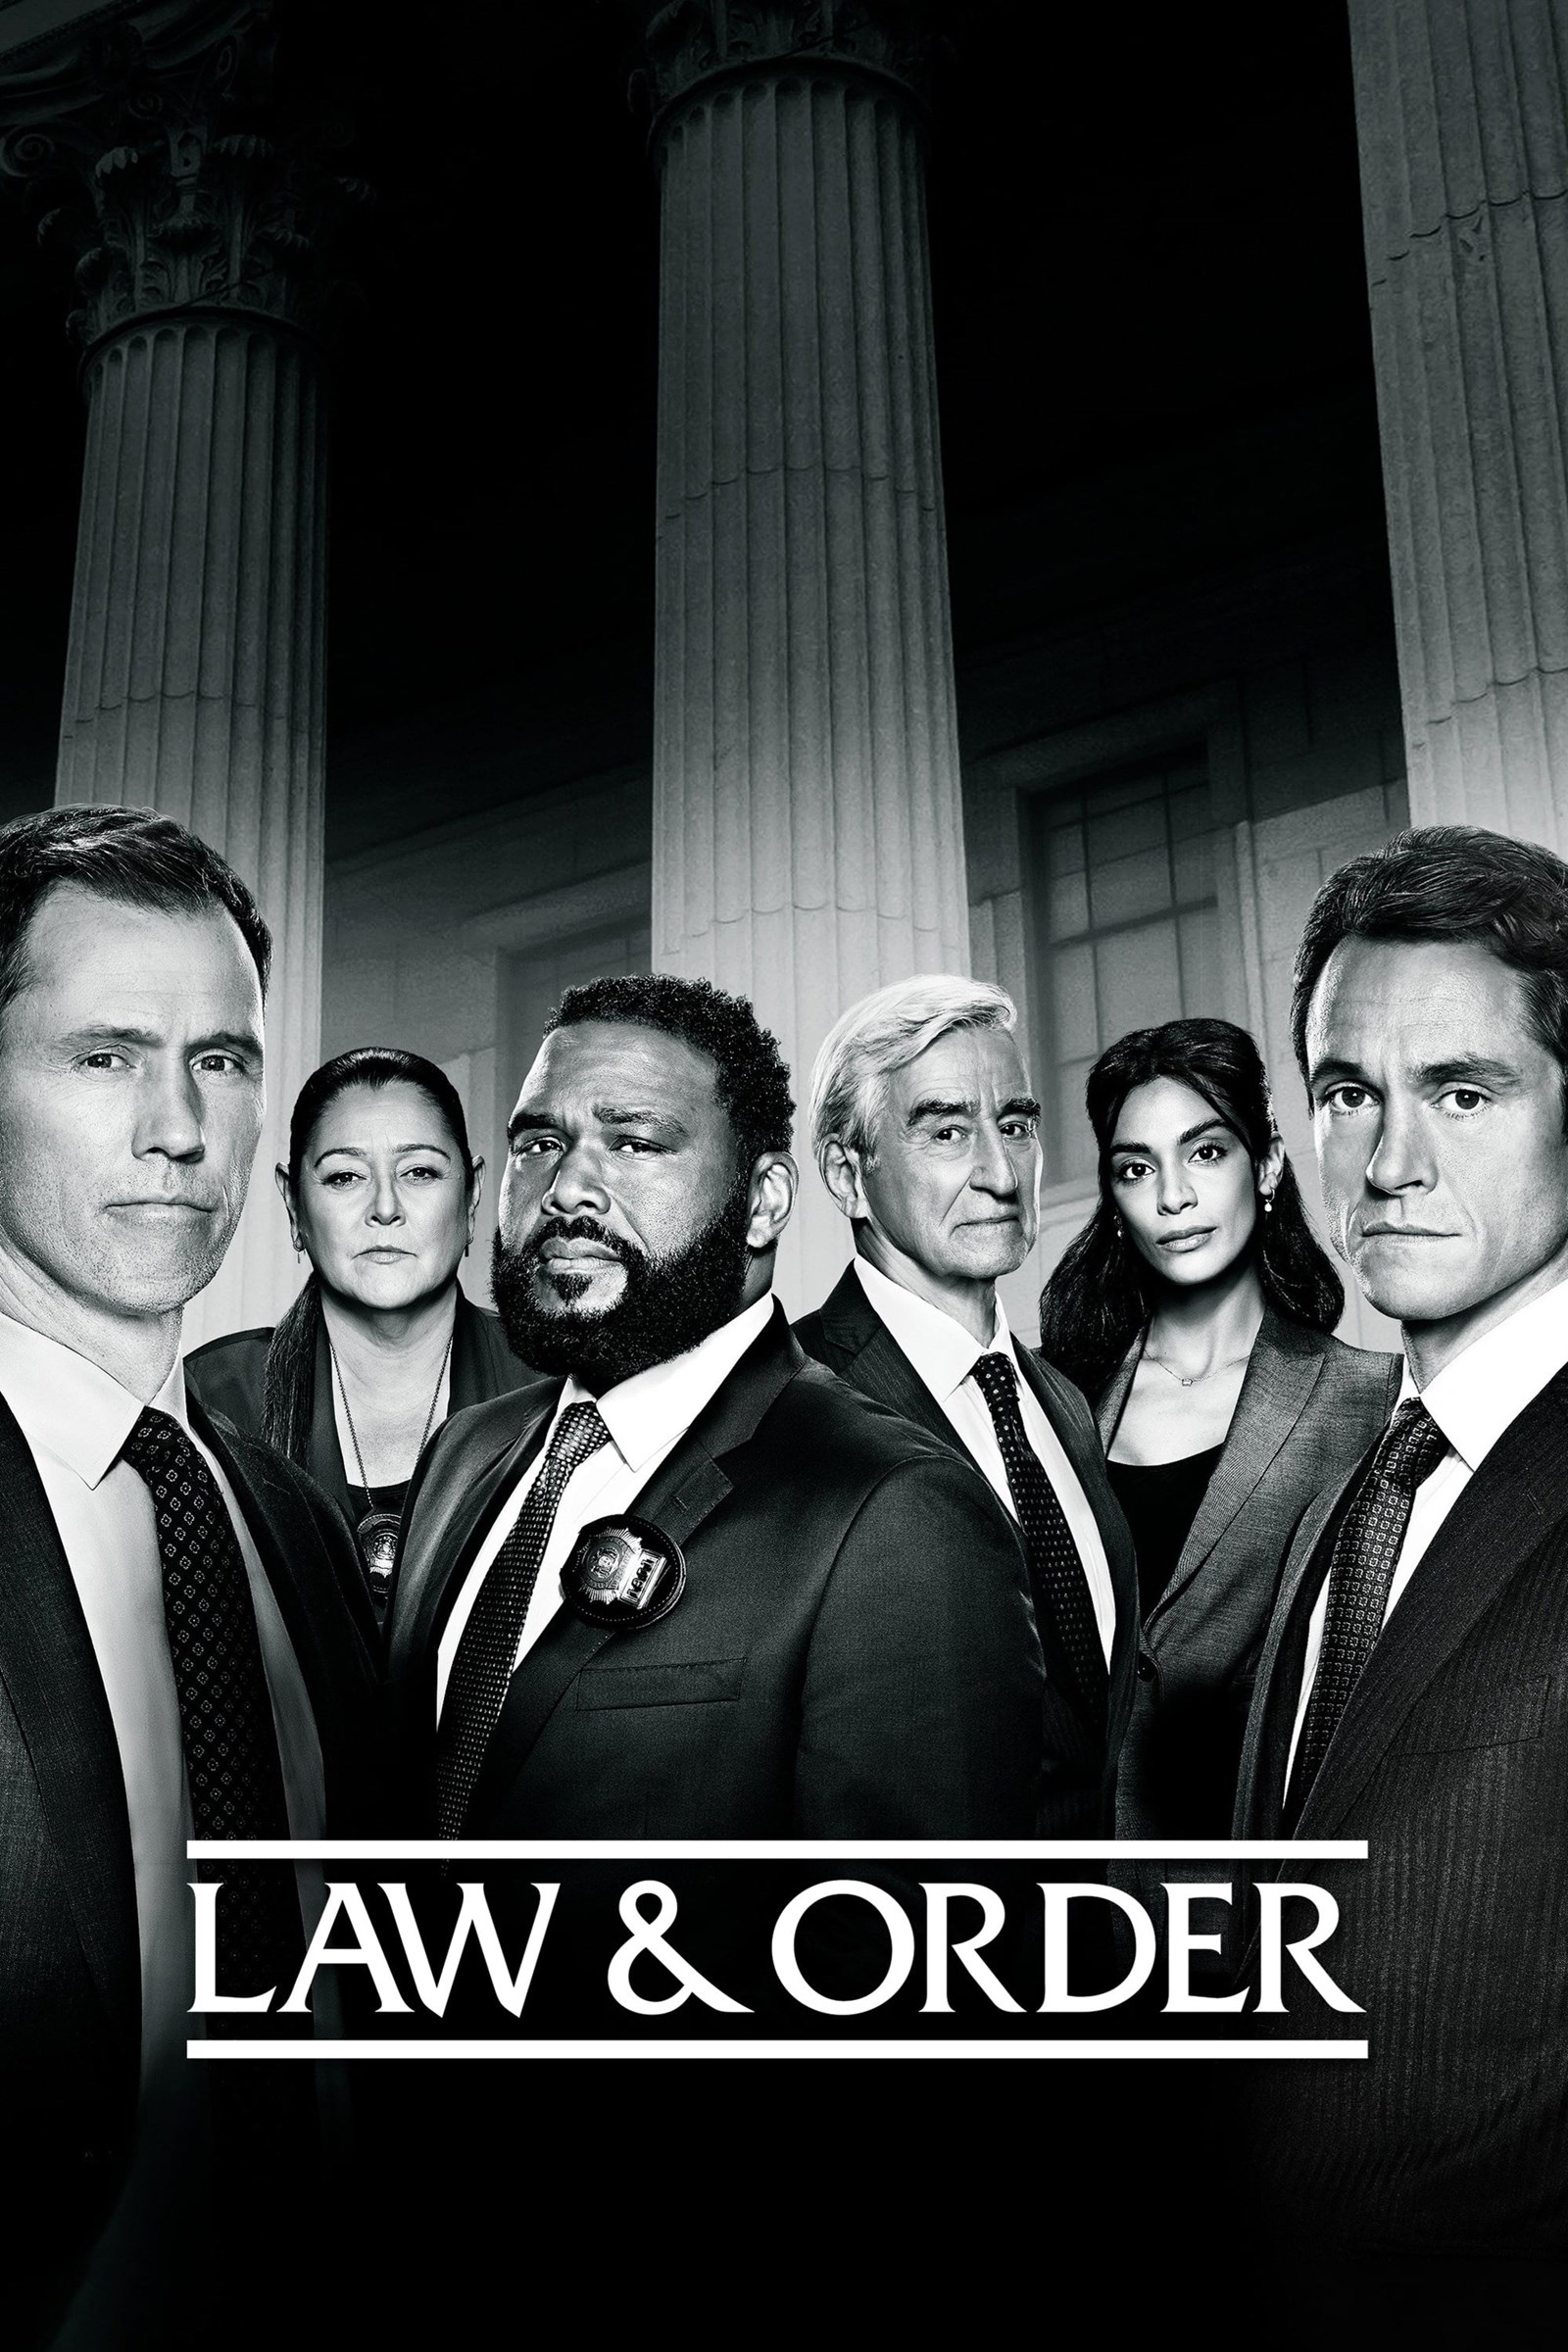 مشاهدة مسلسل Law & Order الموسم 21 الحادي والعشرون الحلقة 1 الاولي مترجمة